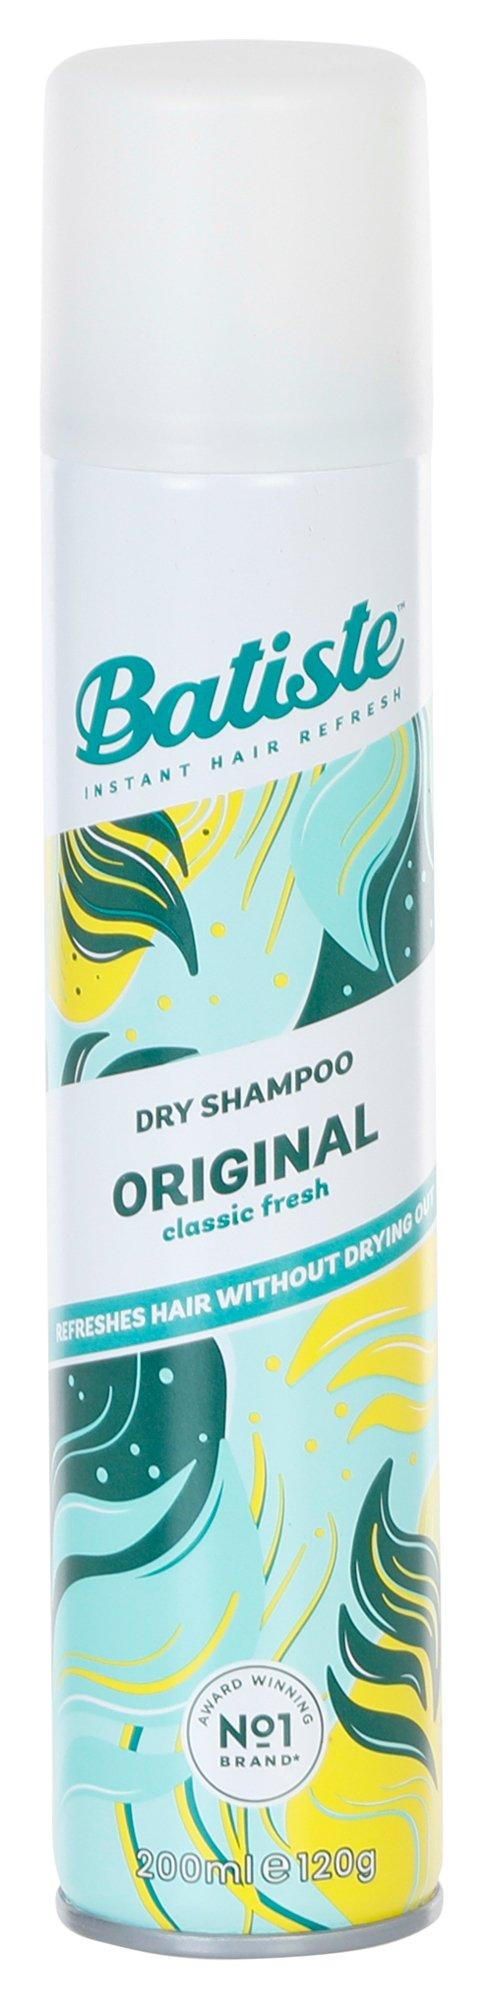 6.7 oz Classic Fresh Dry Shampoo